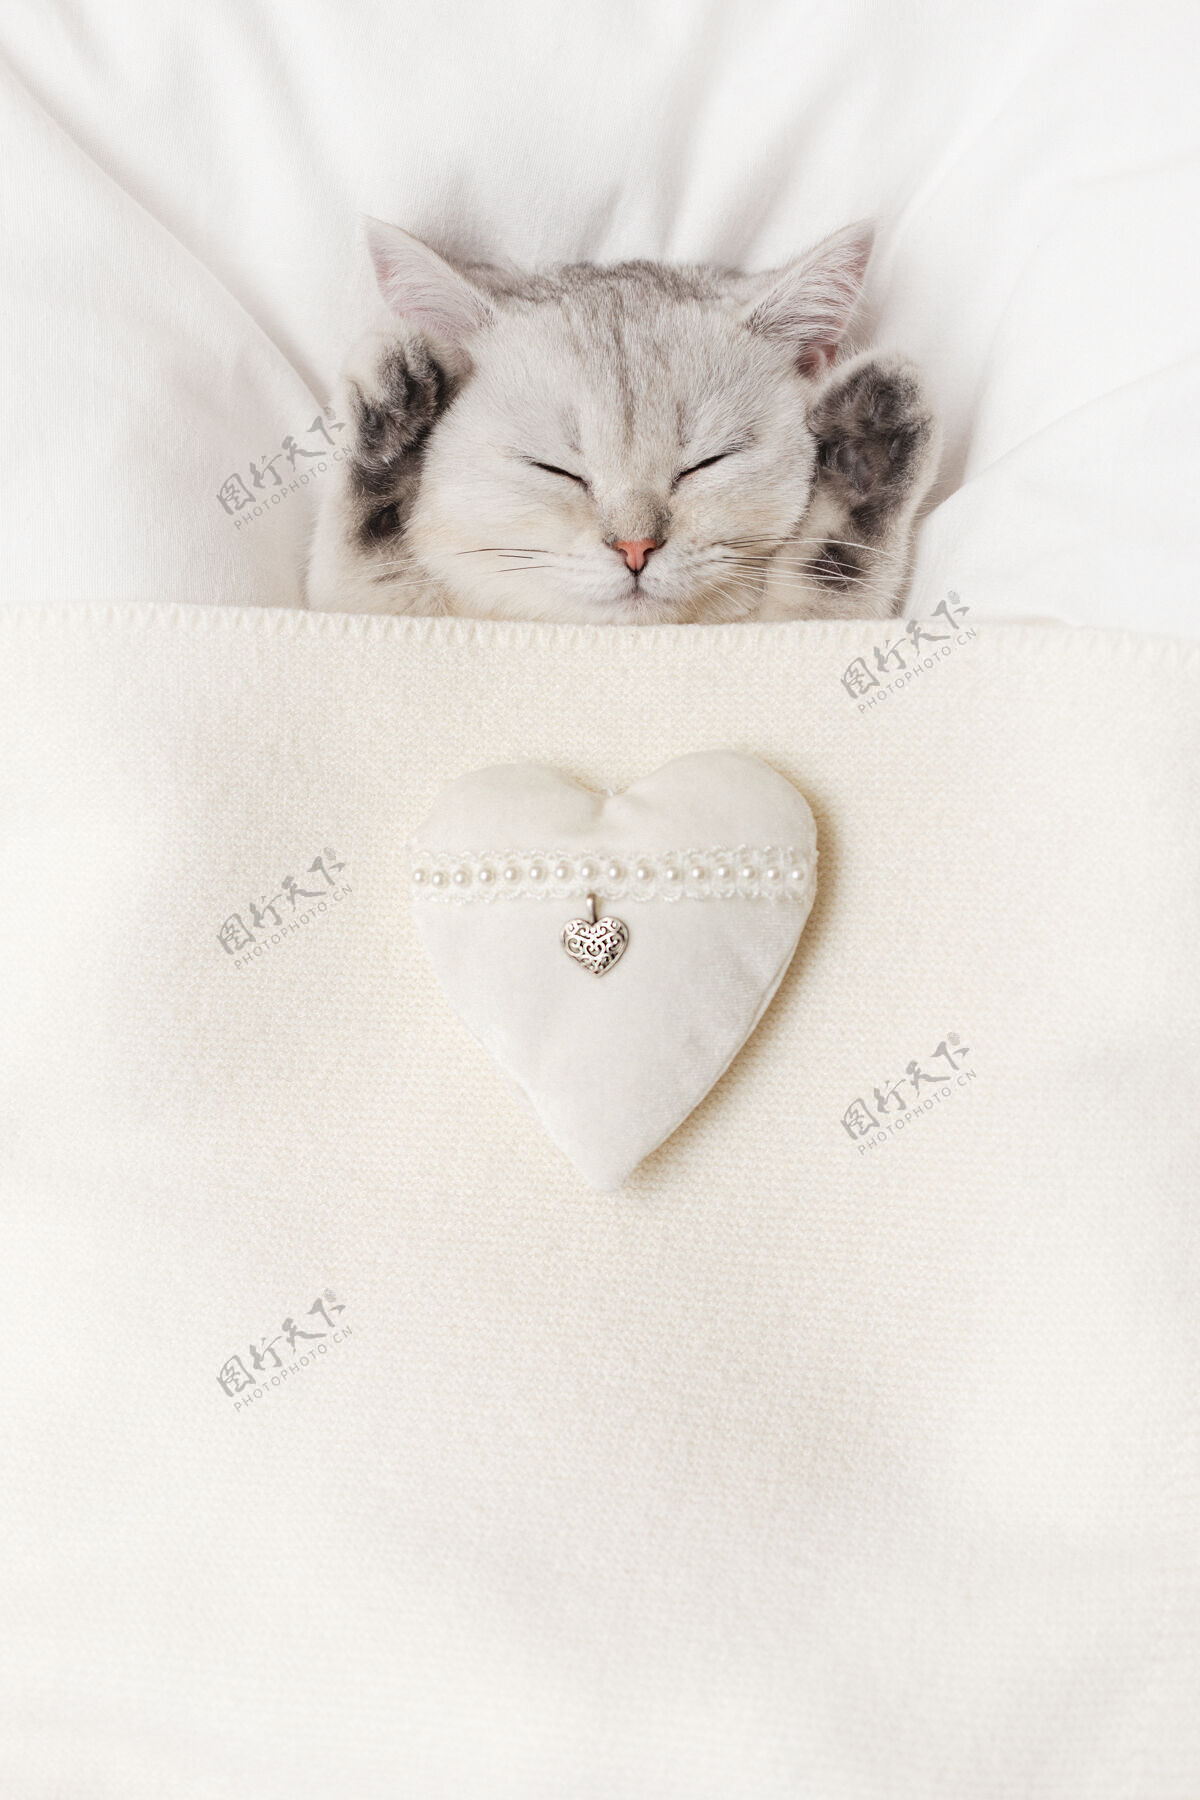 垂直一只可爱的白色英国小猫睡在白色针织毛毯下 心形是白色的纺织品猫猫柔软